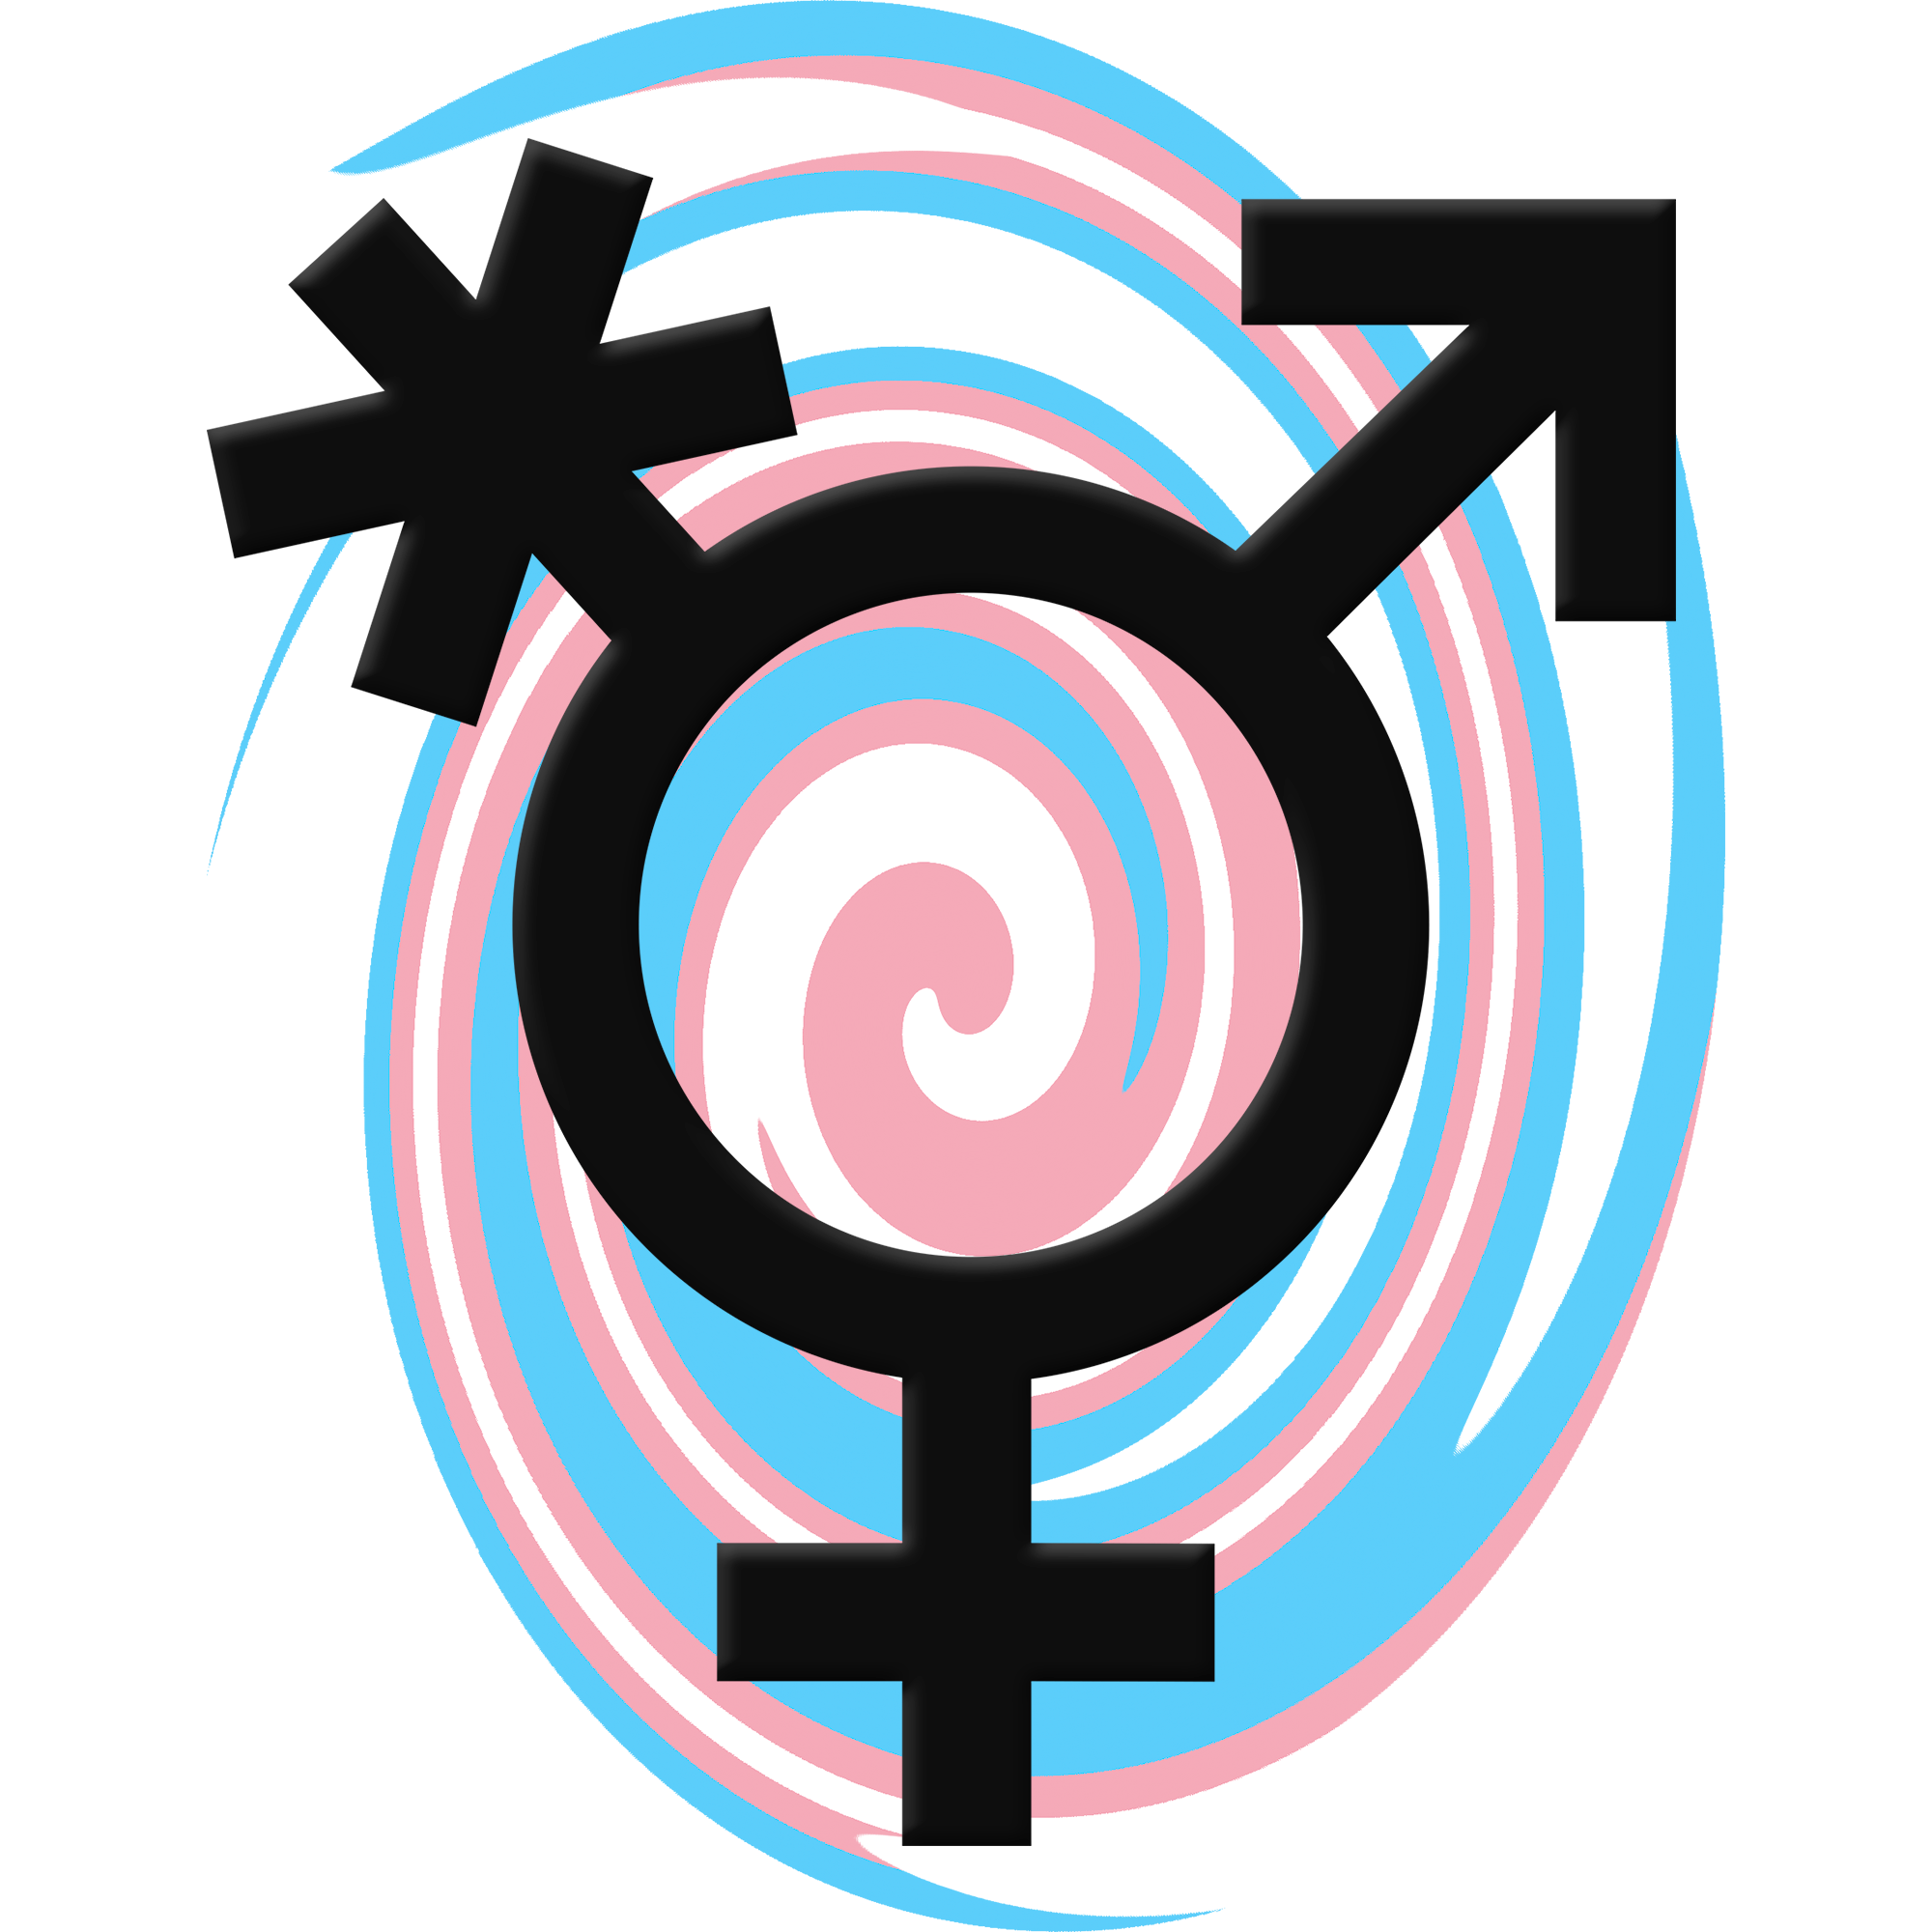 Símbolo trans (com asterisco não-binário numa ponta, símbolo de Marte em outra ponta e símbolo de Vênus pra baixo) em cor preta, por cima de um redemoinho composto por faixas azul/rosa/branca/rosa/azul.